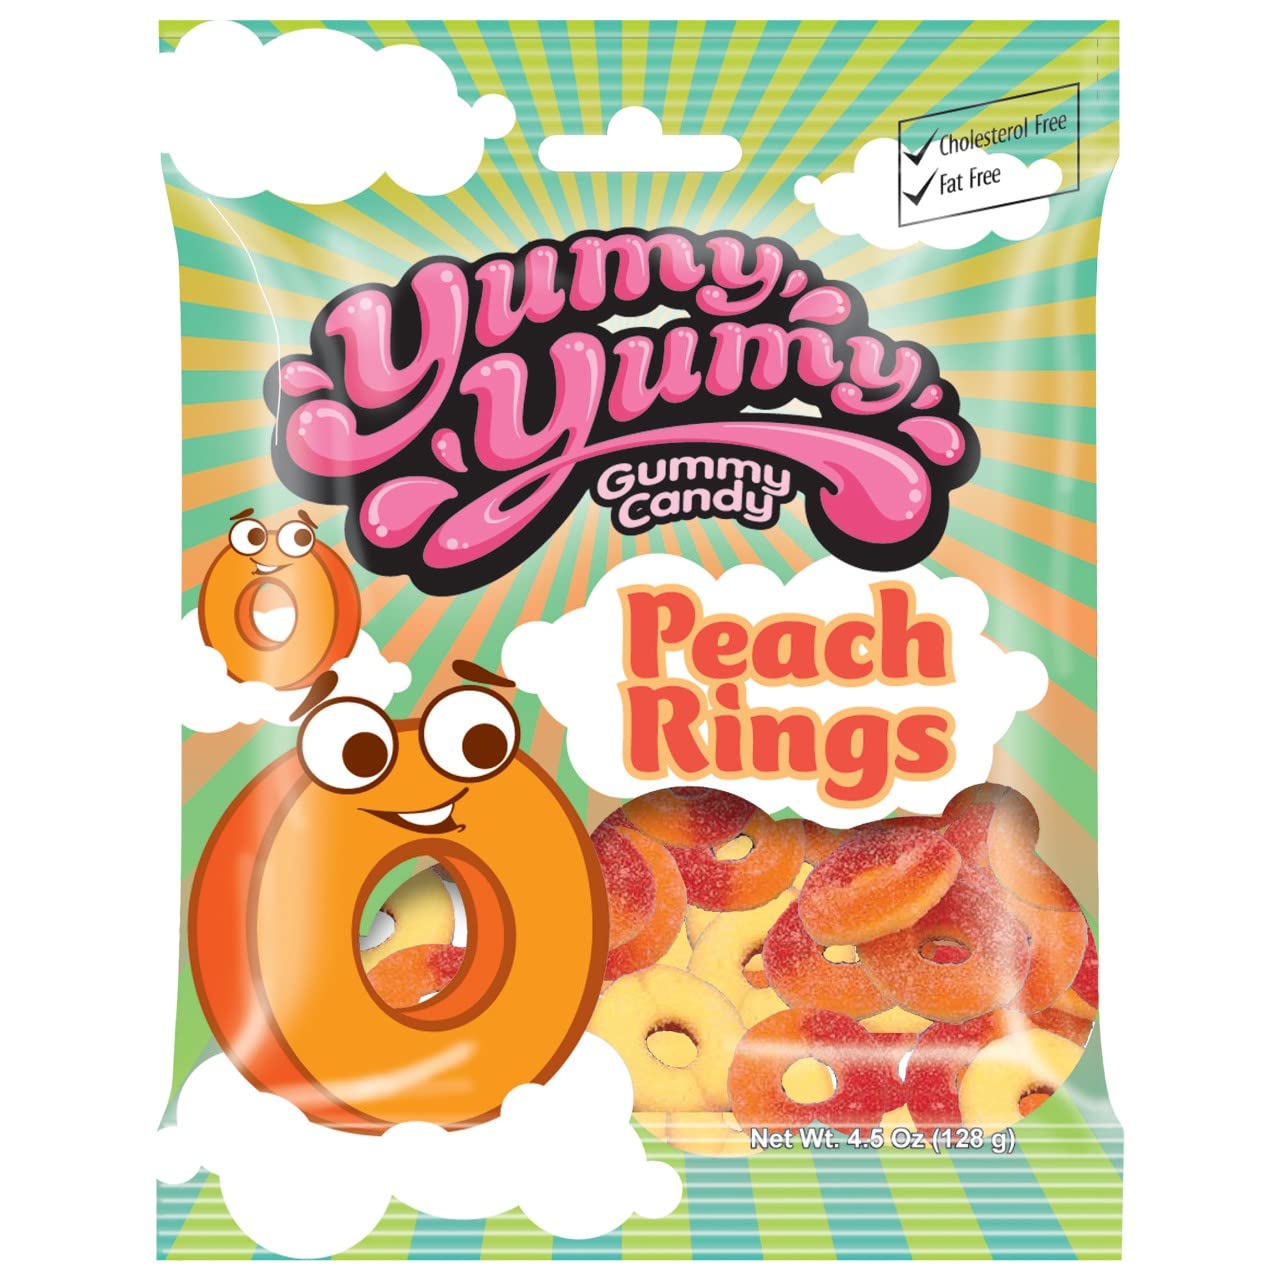 Yumy Yumy Gummy Candy Peach Rings 4.5Oz